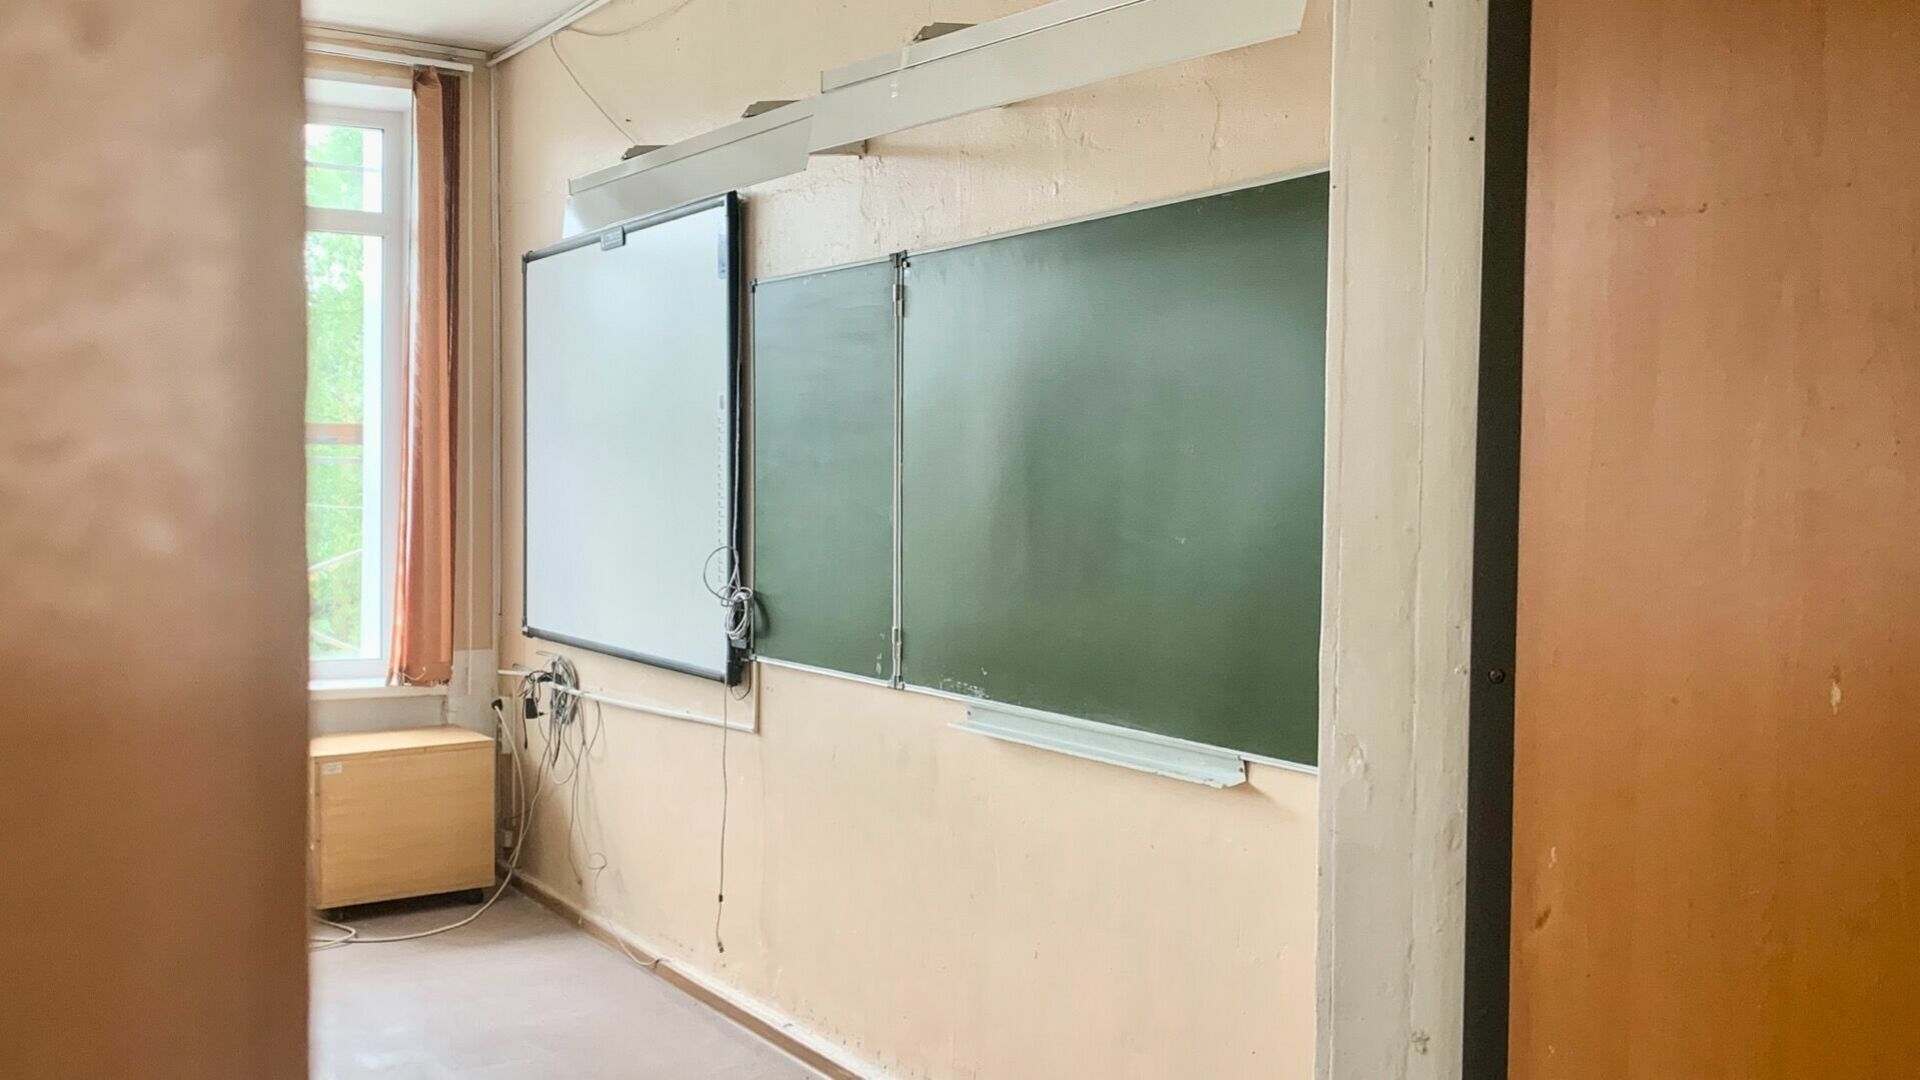 Более 20 млн рублей потратят на реставрацию школы №126 в Нижнем Новгороде